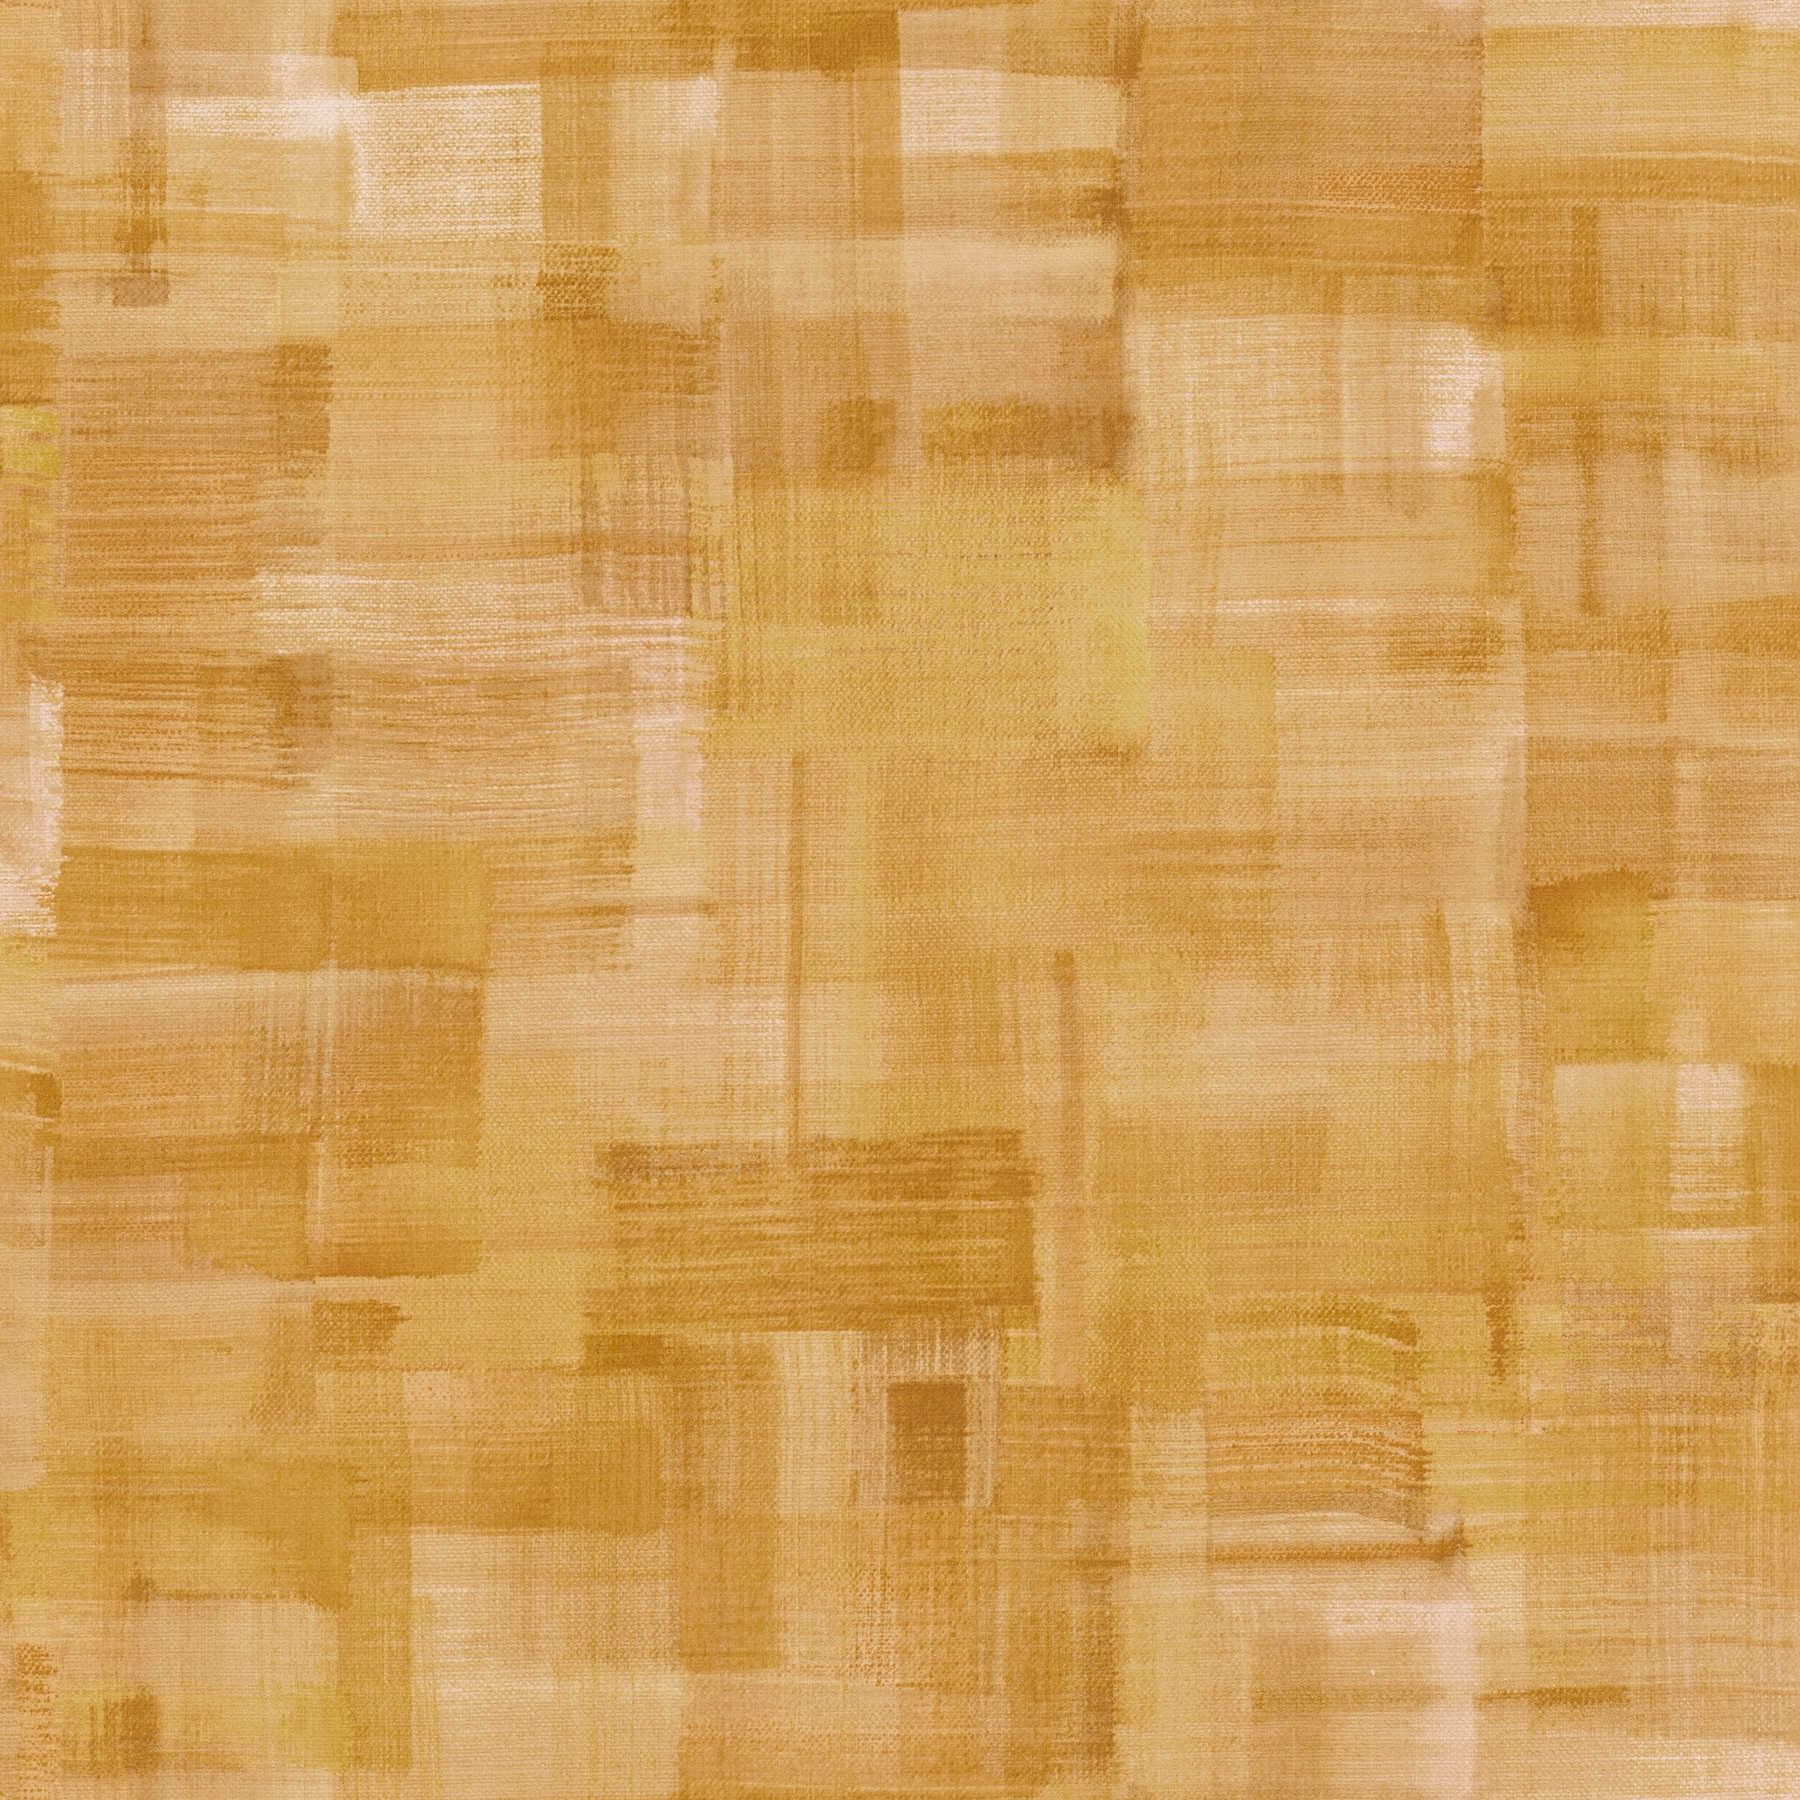         Lienzo de papel pintado Estructura, Tipo Moderno - Amarillo, Naranja
    